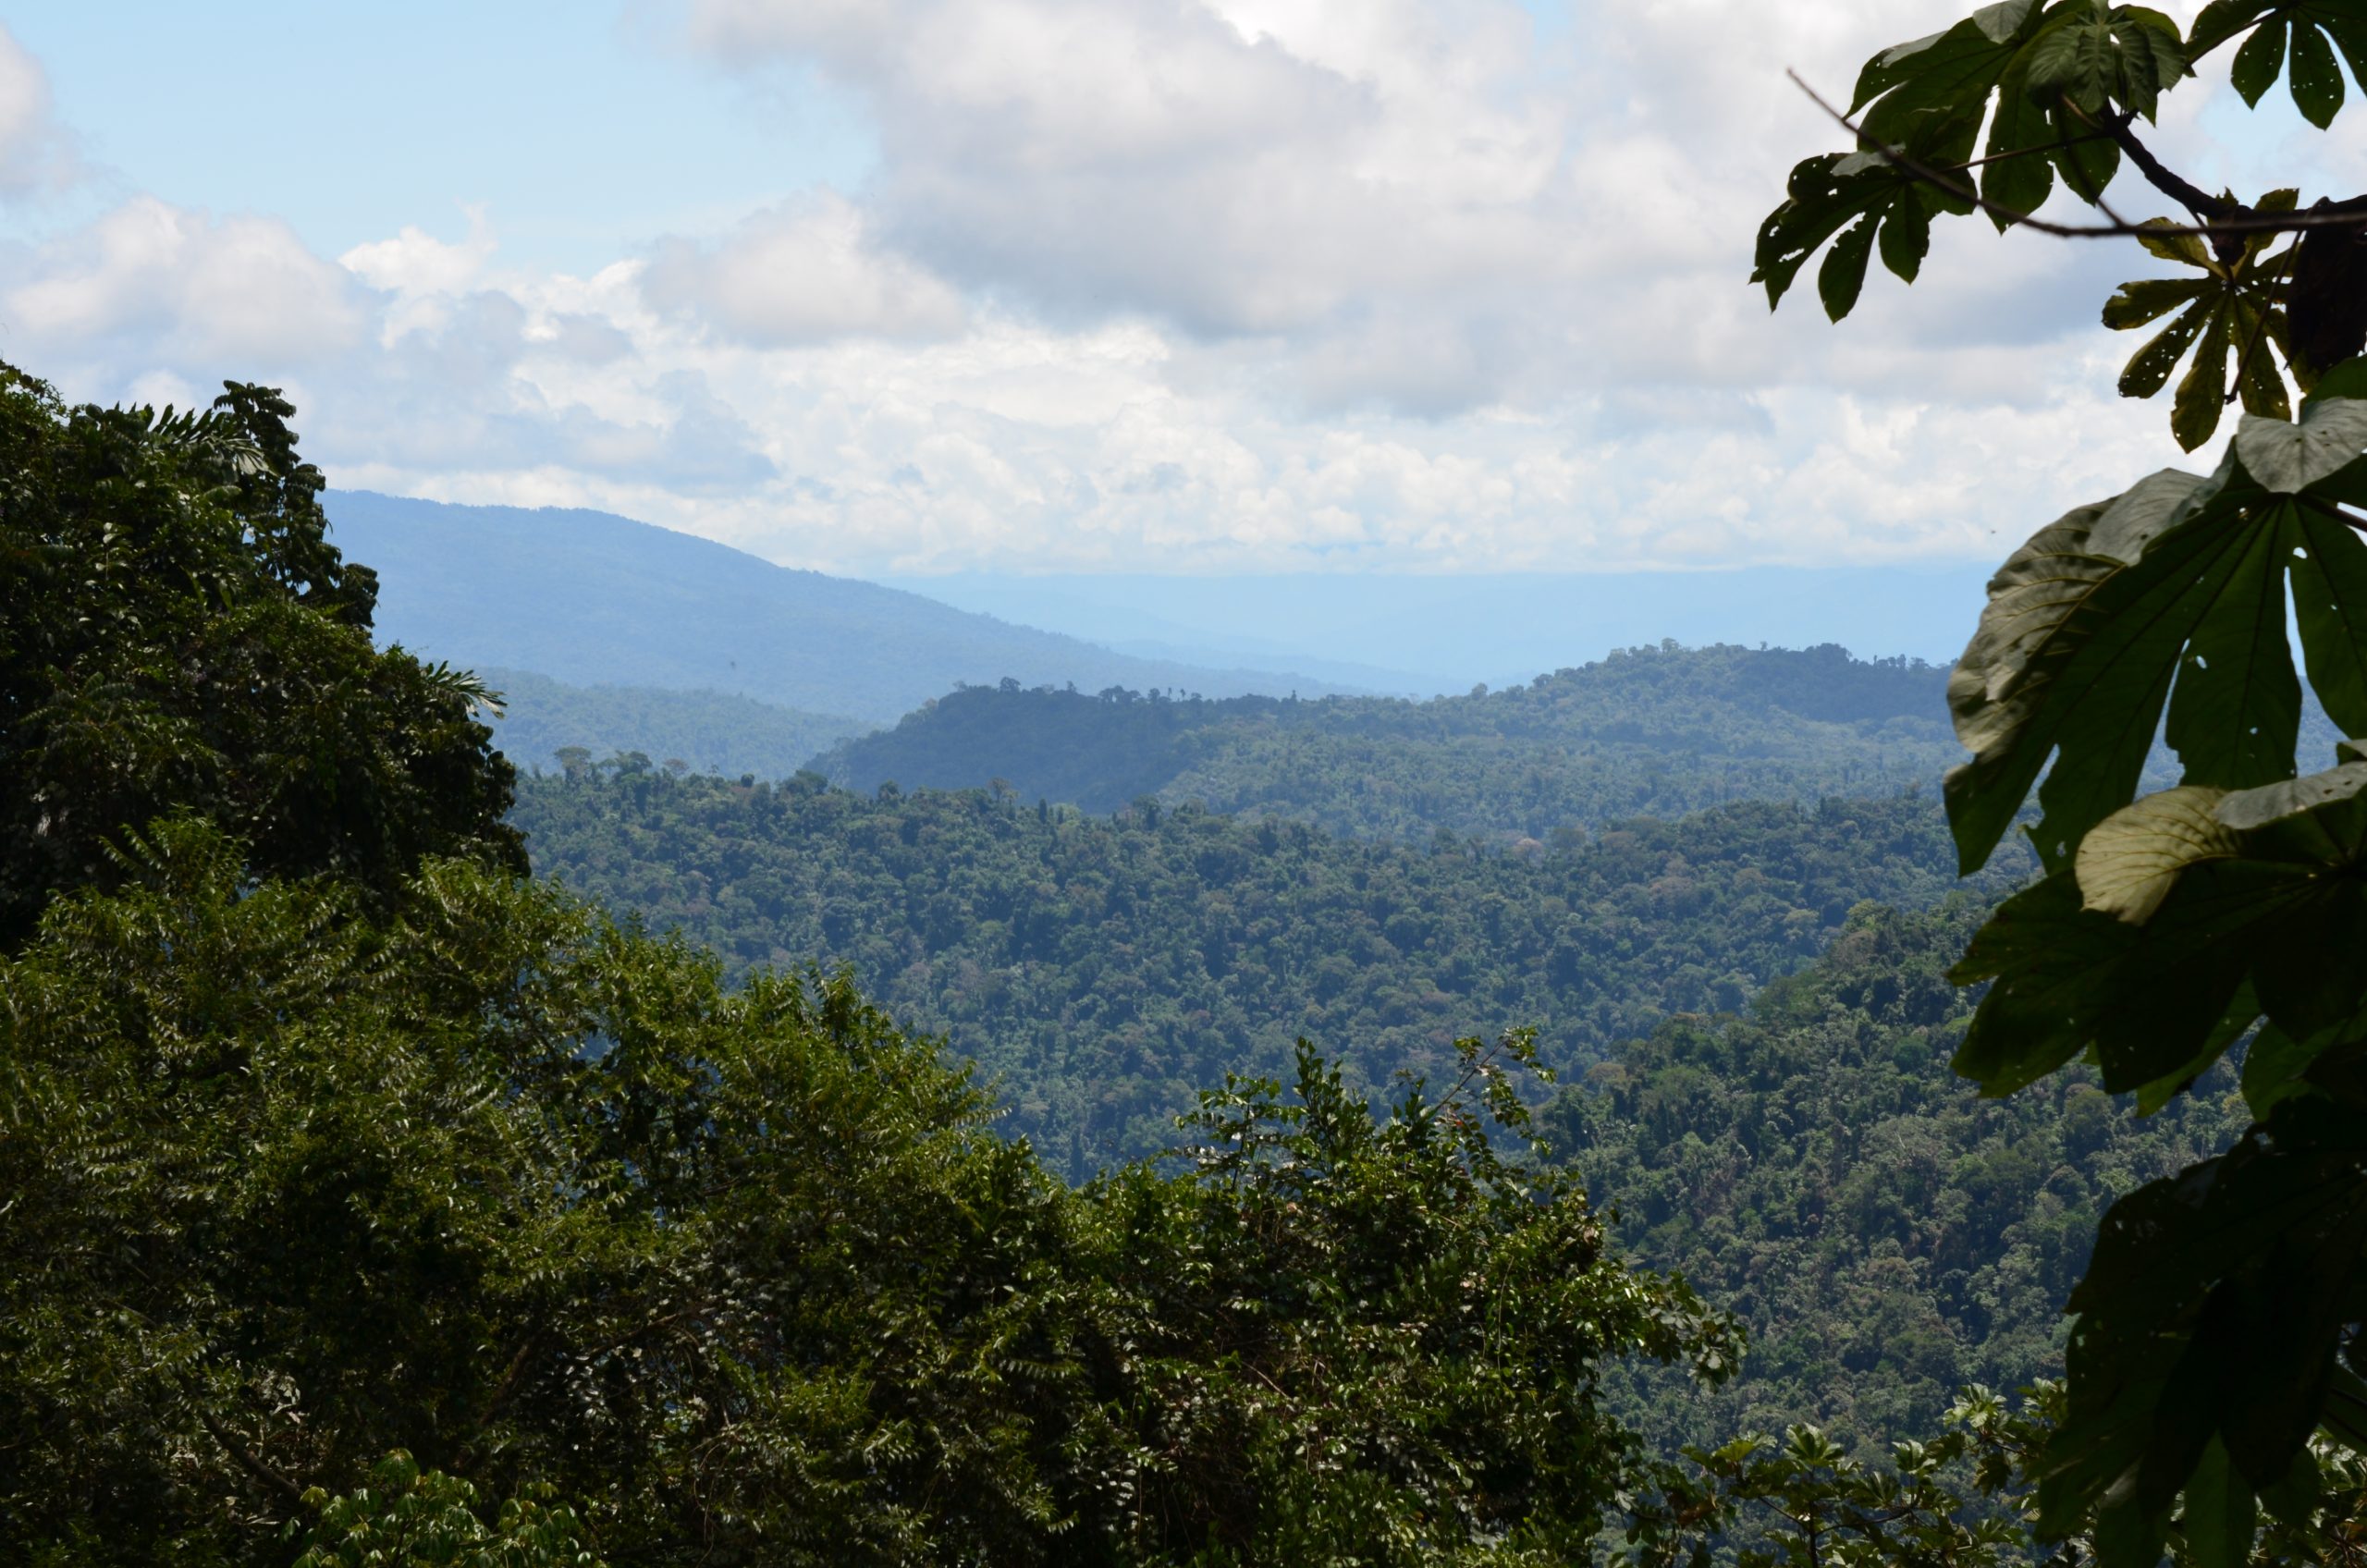 Parijaro Village lies in the remote Amazon rainforest.